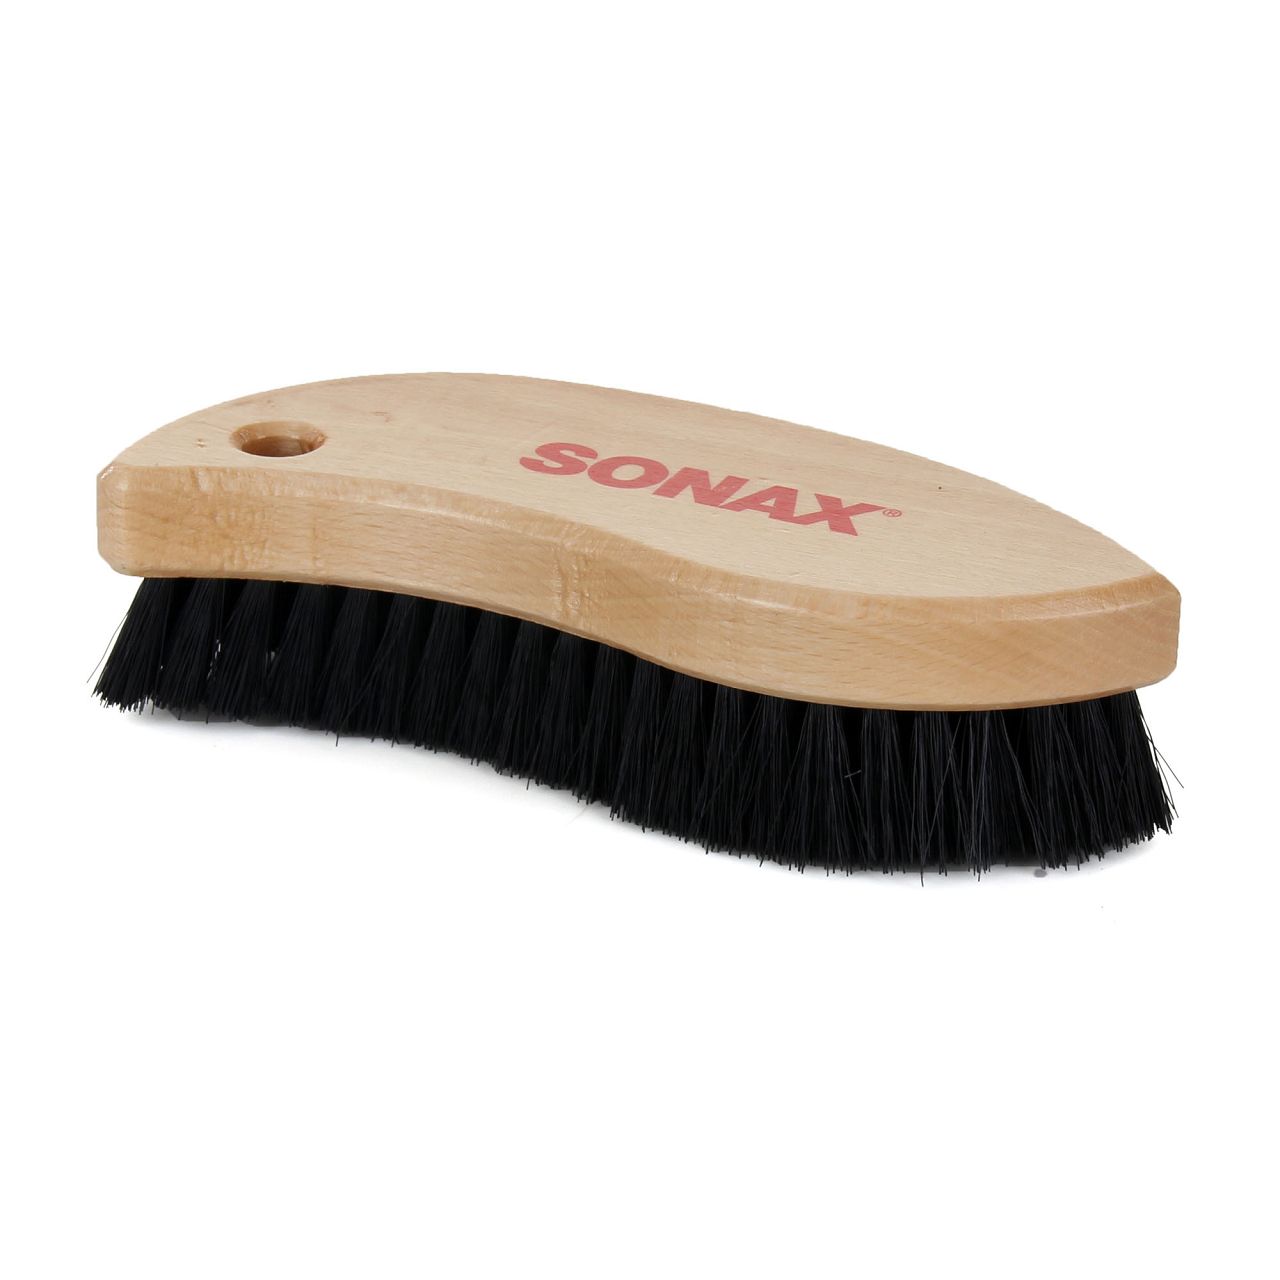 SONAX TextilBürste LederBürste Bürste Textilpflege Lederpflege 04167410